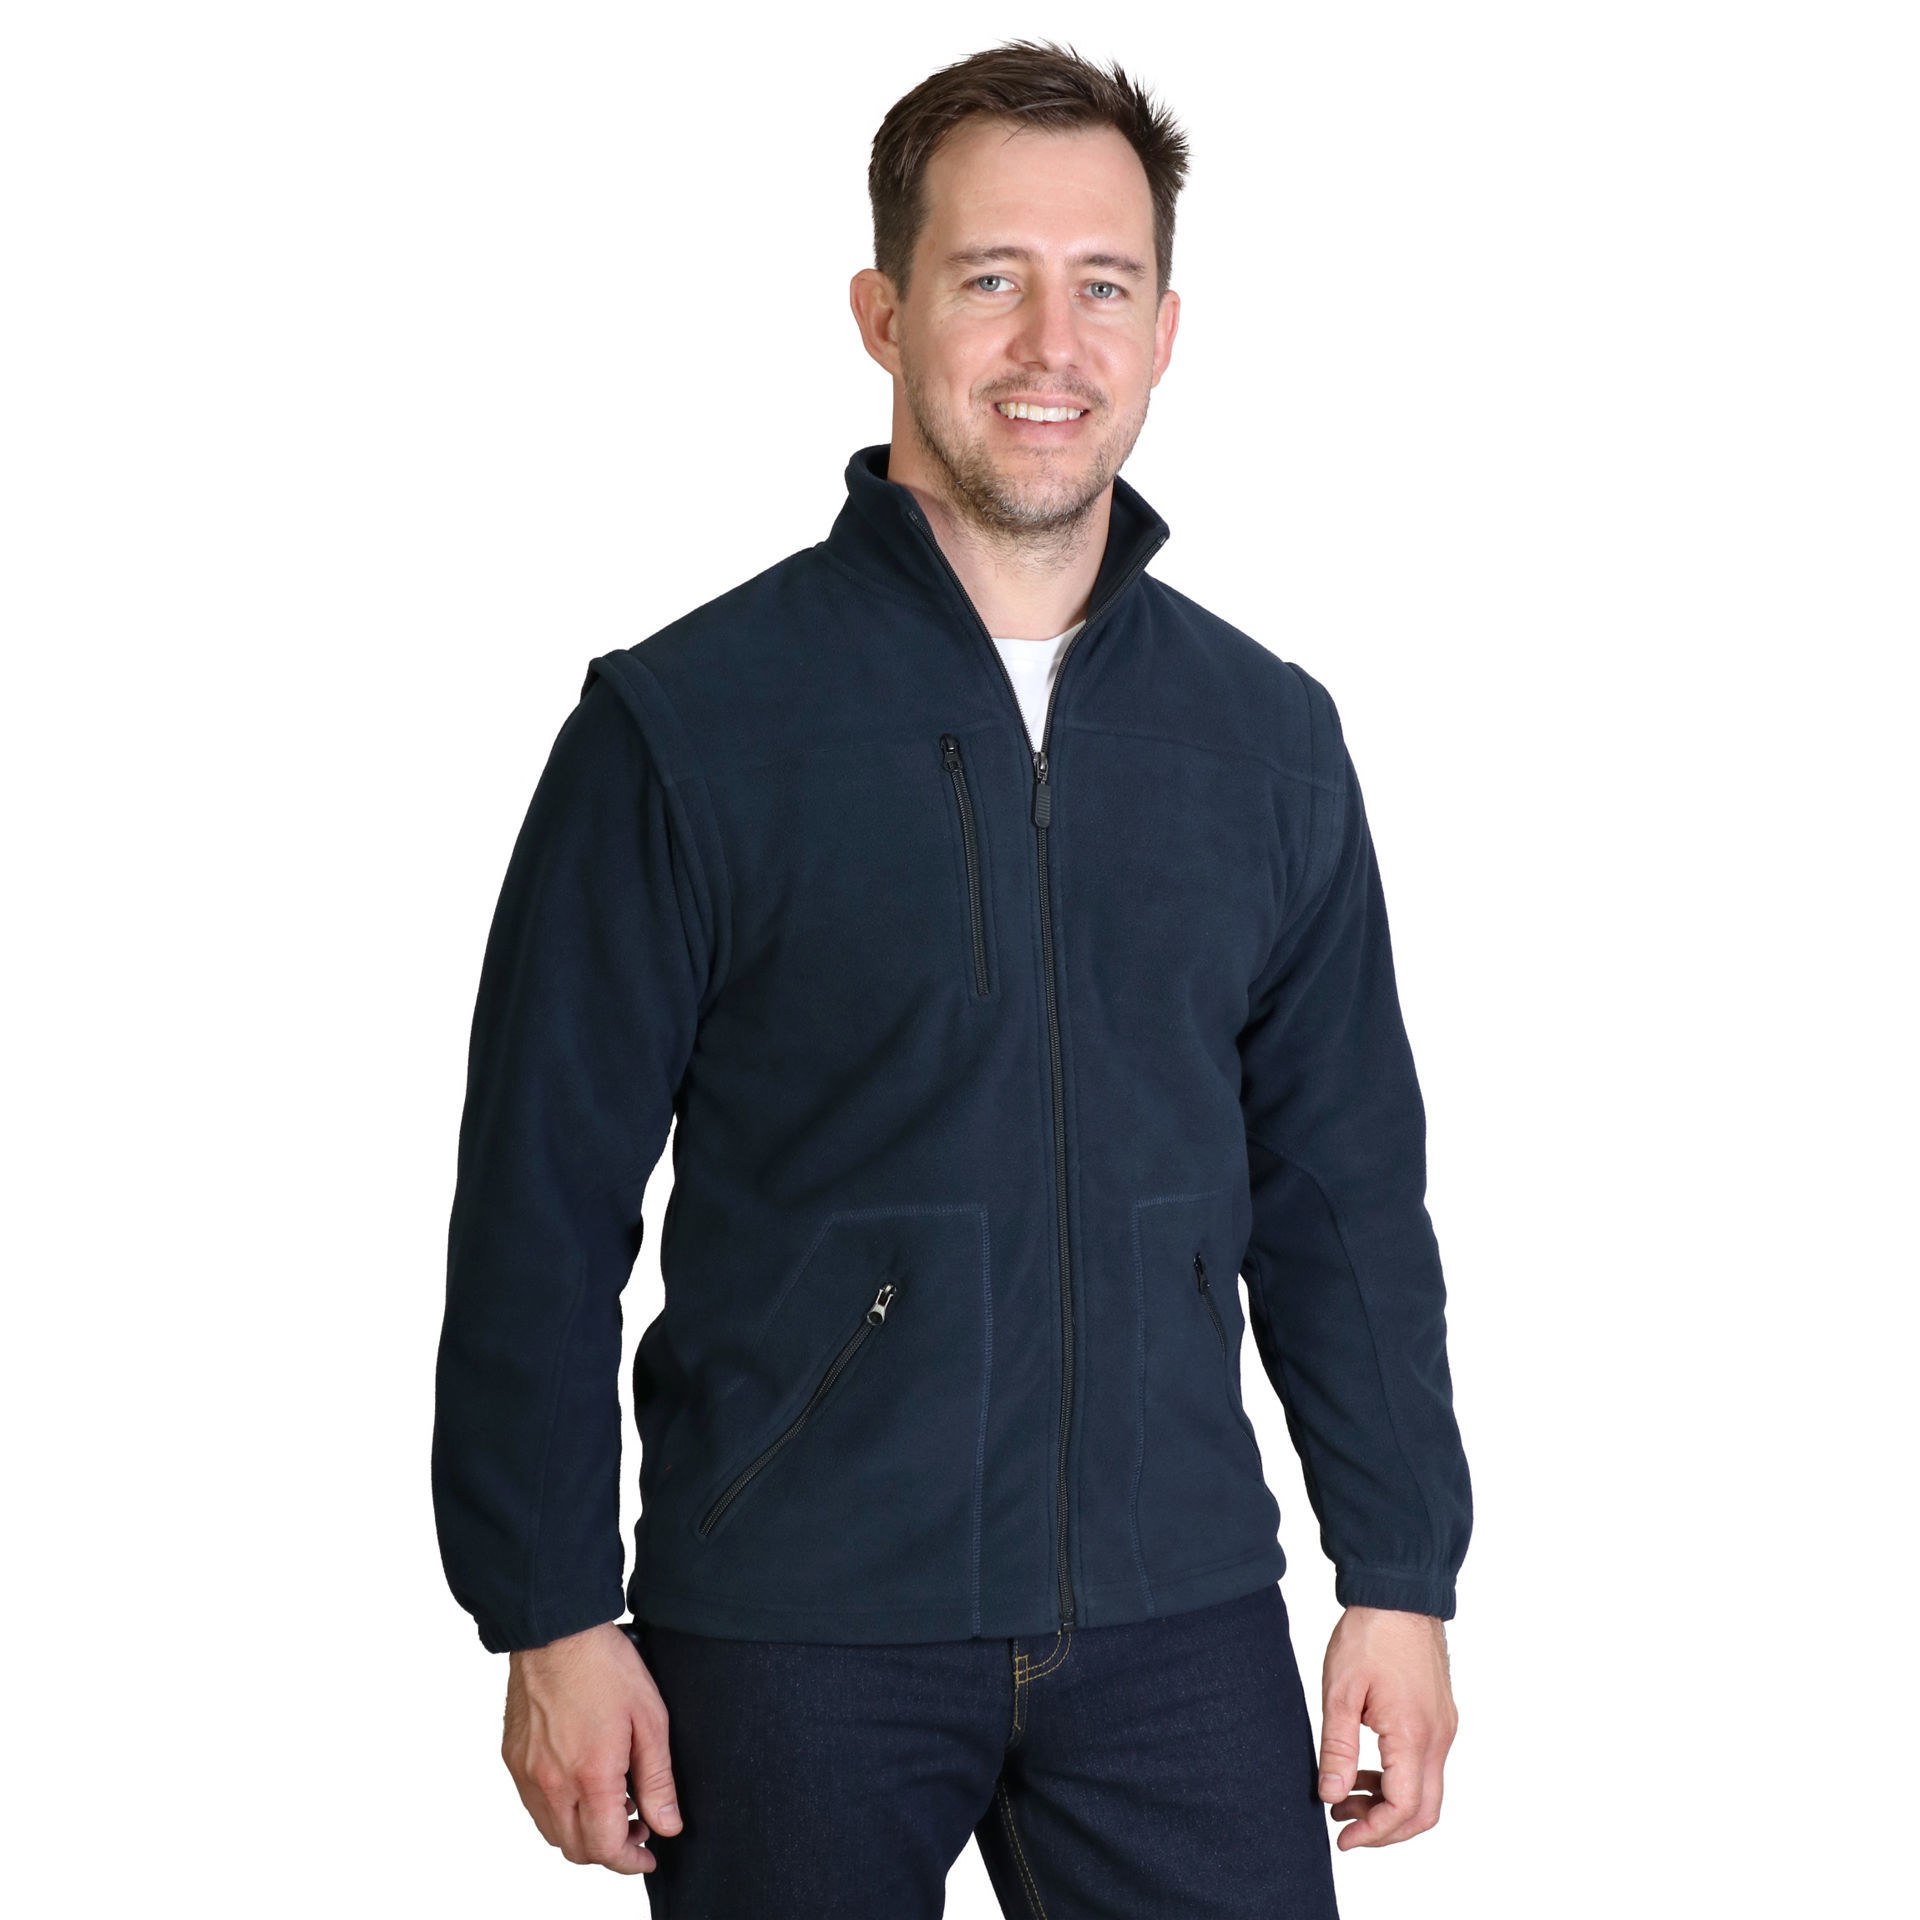 Eddie Bauer Men's Wind-Resistant Full-Zip Fleece Jacket